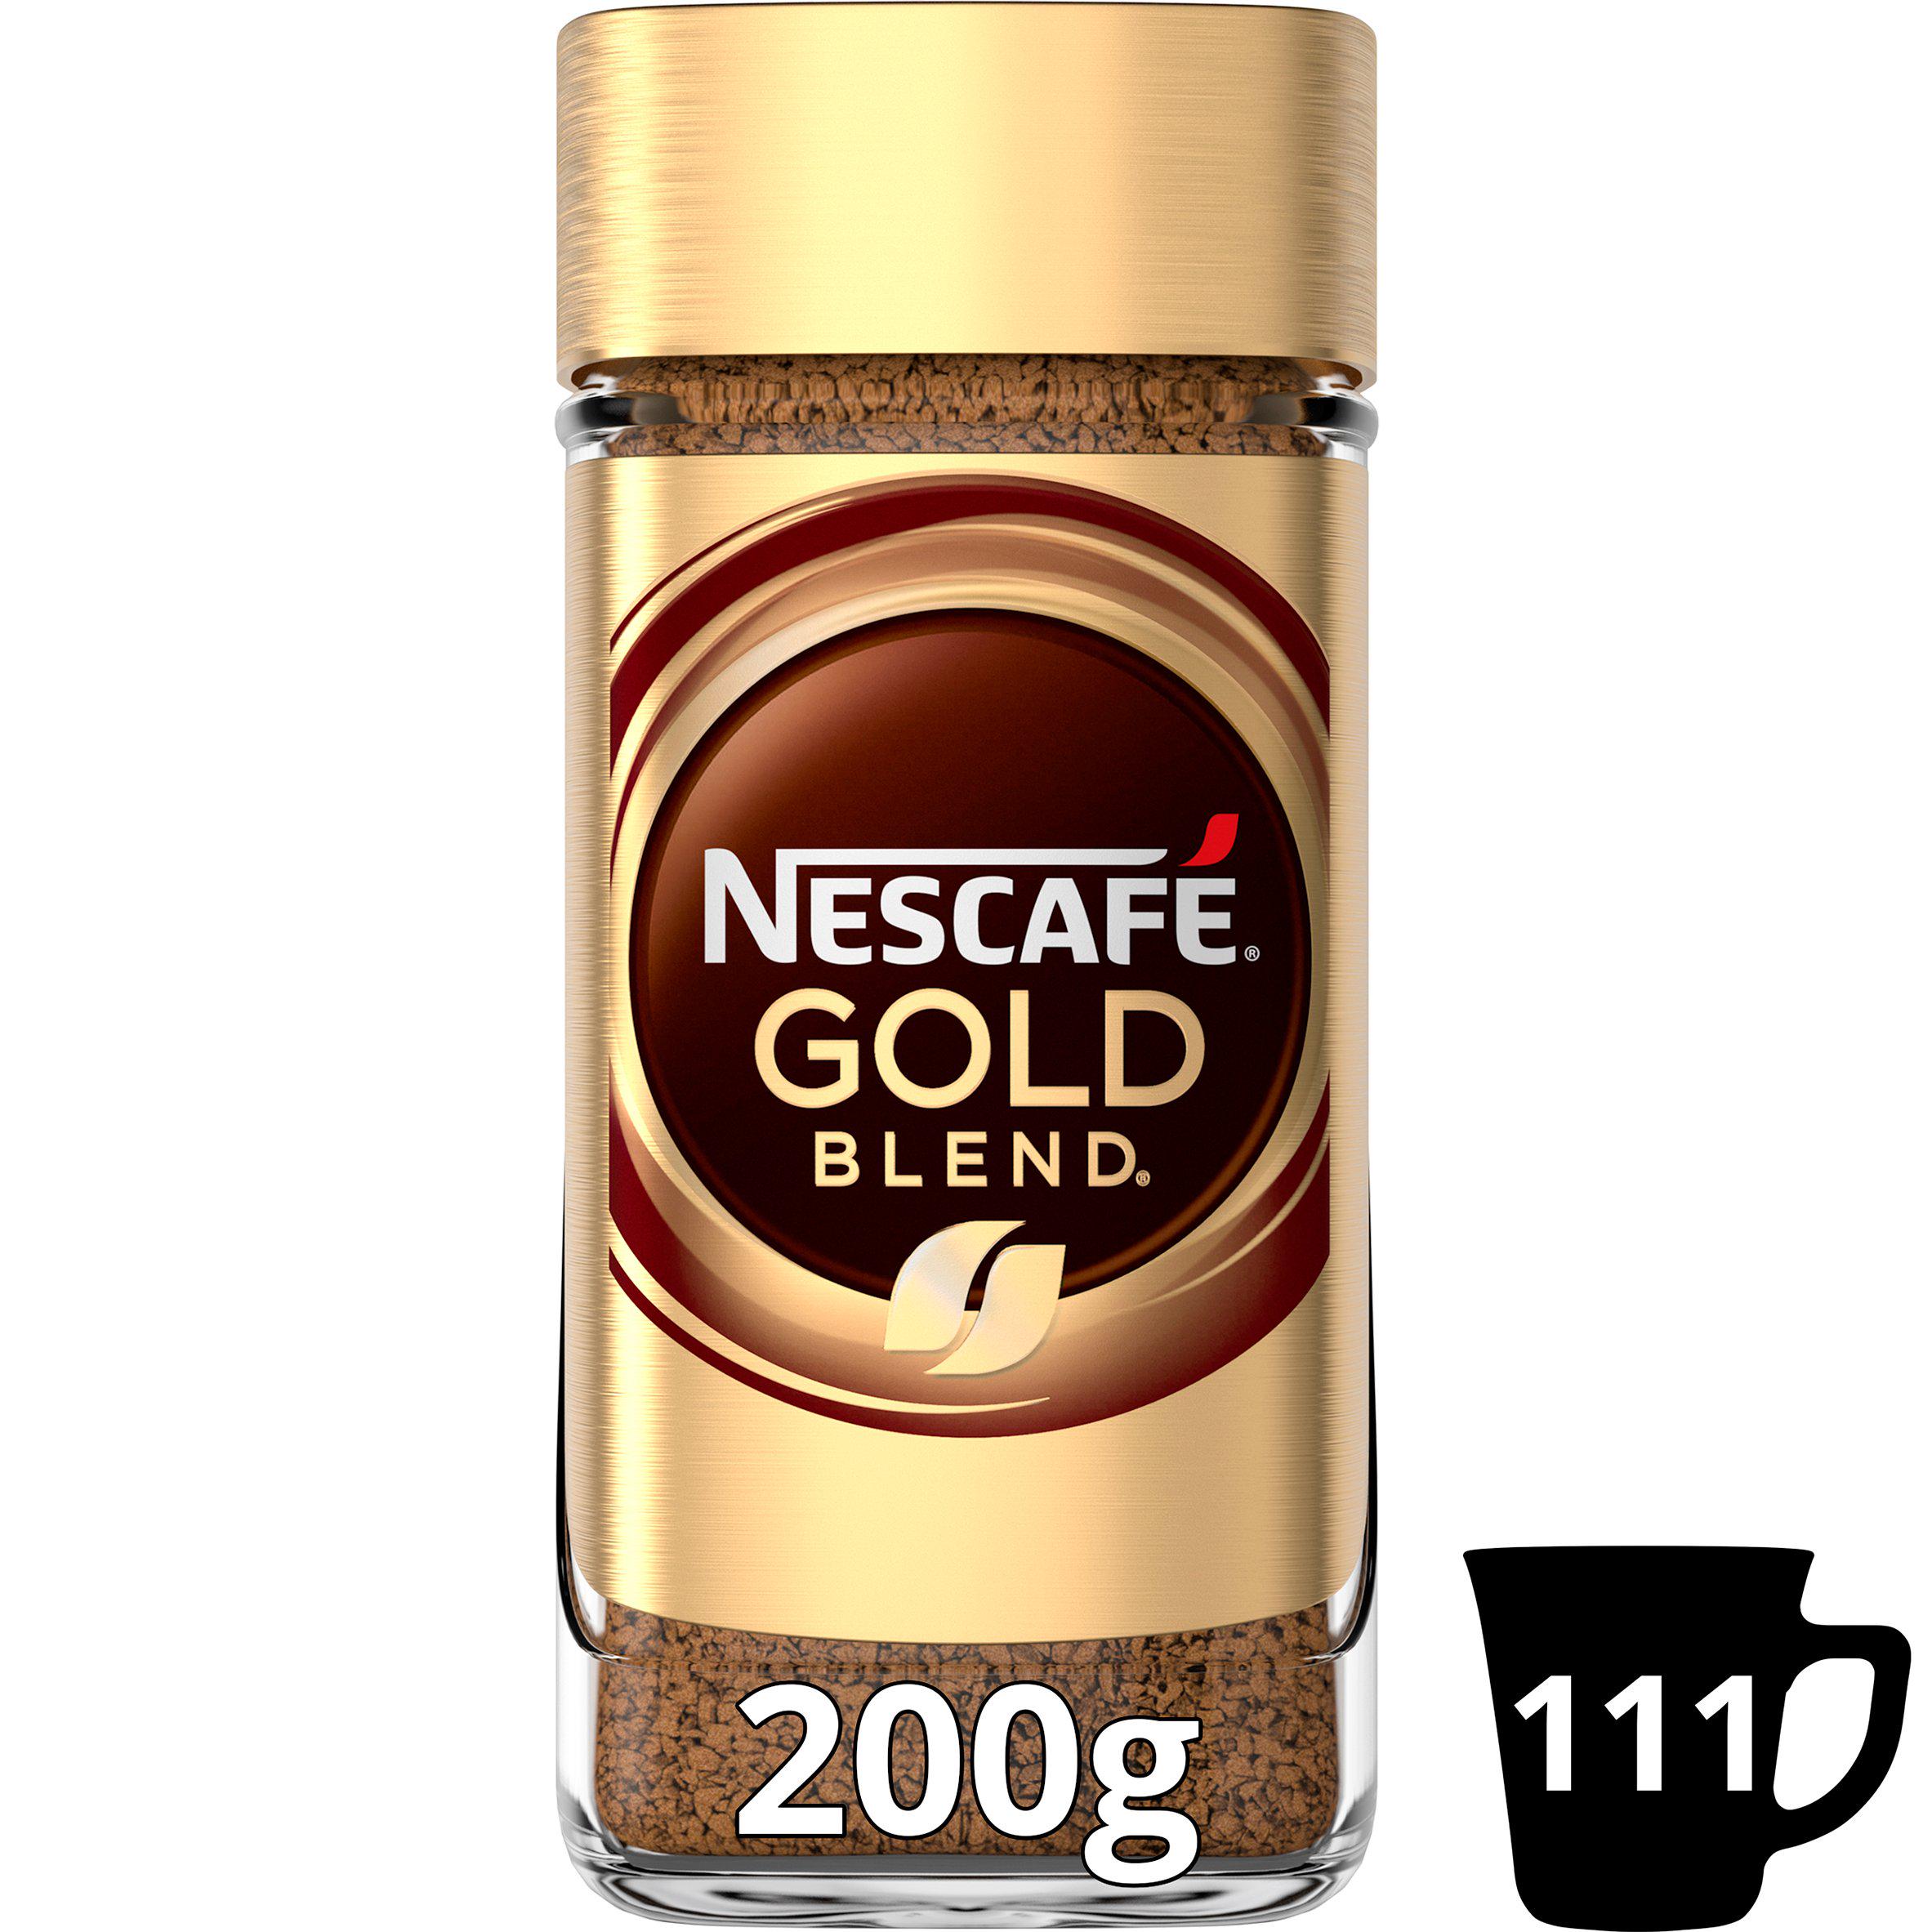 Sparen Sie 1,50 £ beim Nescafe Gold Blend bei Sainsbury's